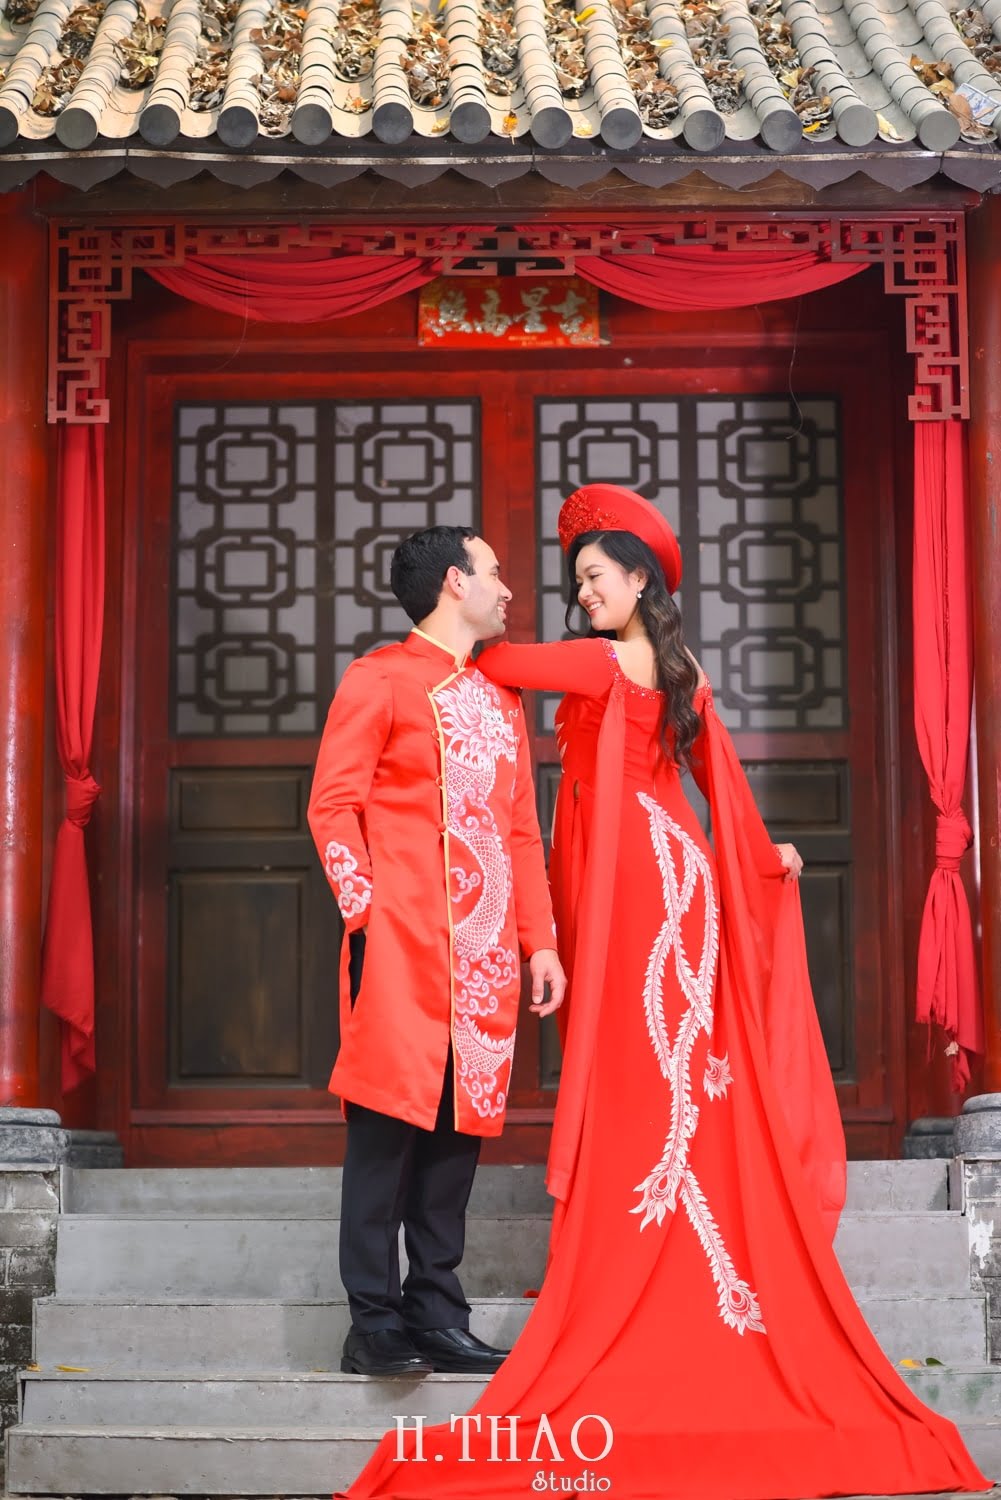 Anh couple 5 min - Bộ ảnh cưới áo dài truyền thống theo phong cách Việt đẹp – HThao Studio